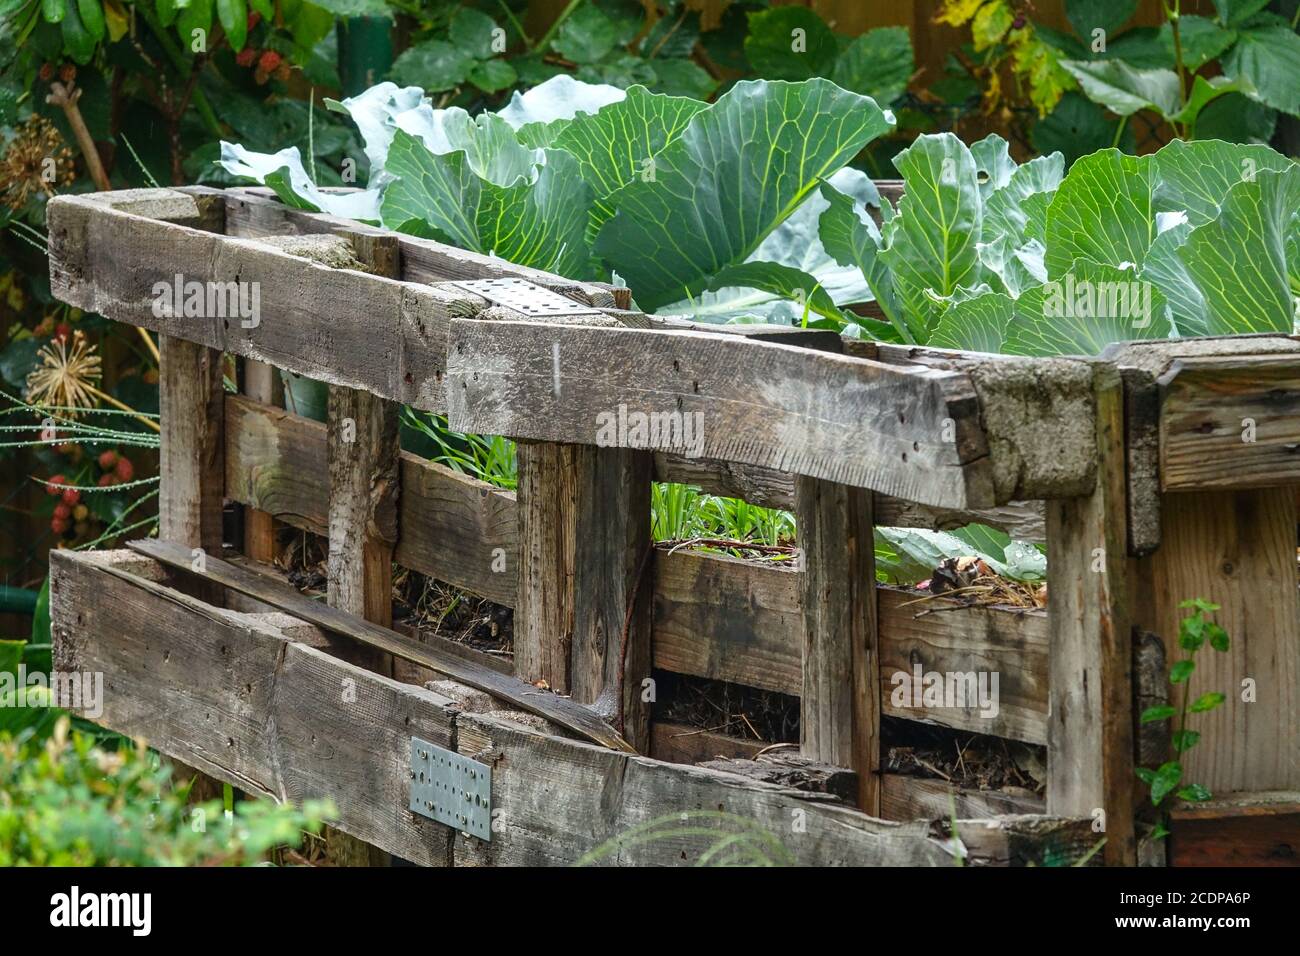 Jardin à lit surélevé, plantes potagères poussant dans le jardin d'allotissement cultivant des légumes Banque D'Images